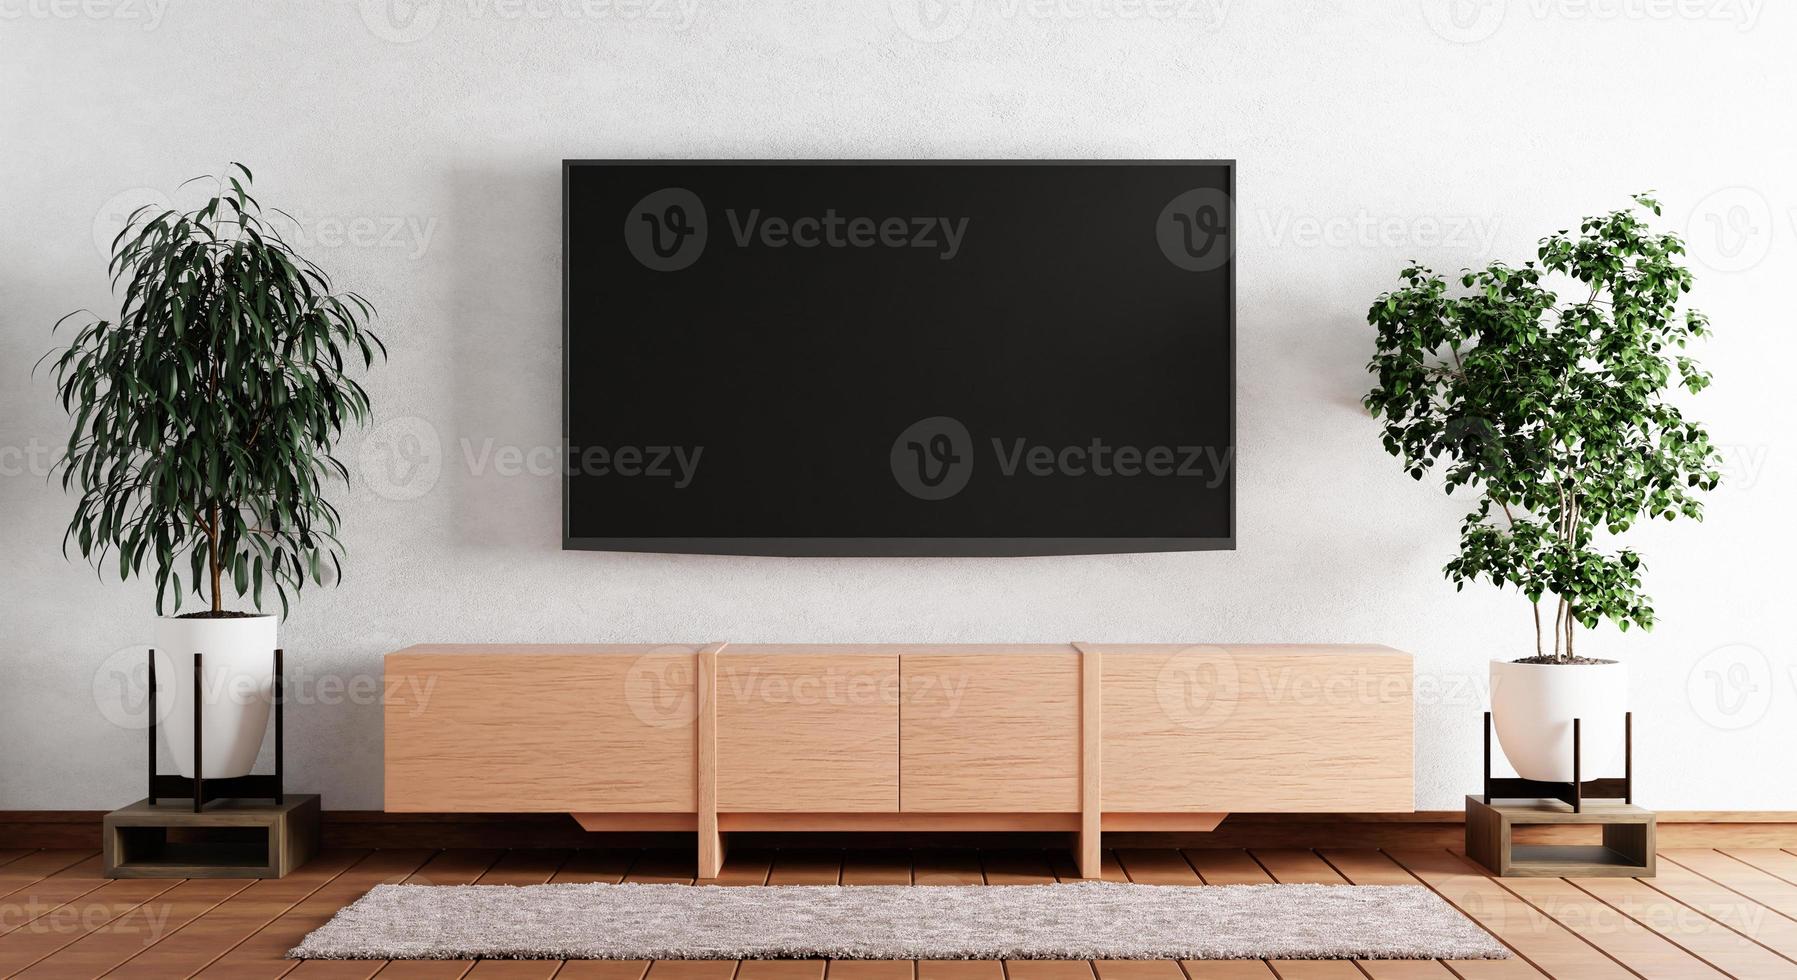 TV ovanför träskåp i modernt tomt rum med växtmatta på träbakgrund. tema i japansk stil. arkitektur och inredningskoncept. 3d illustration rendering foto